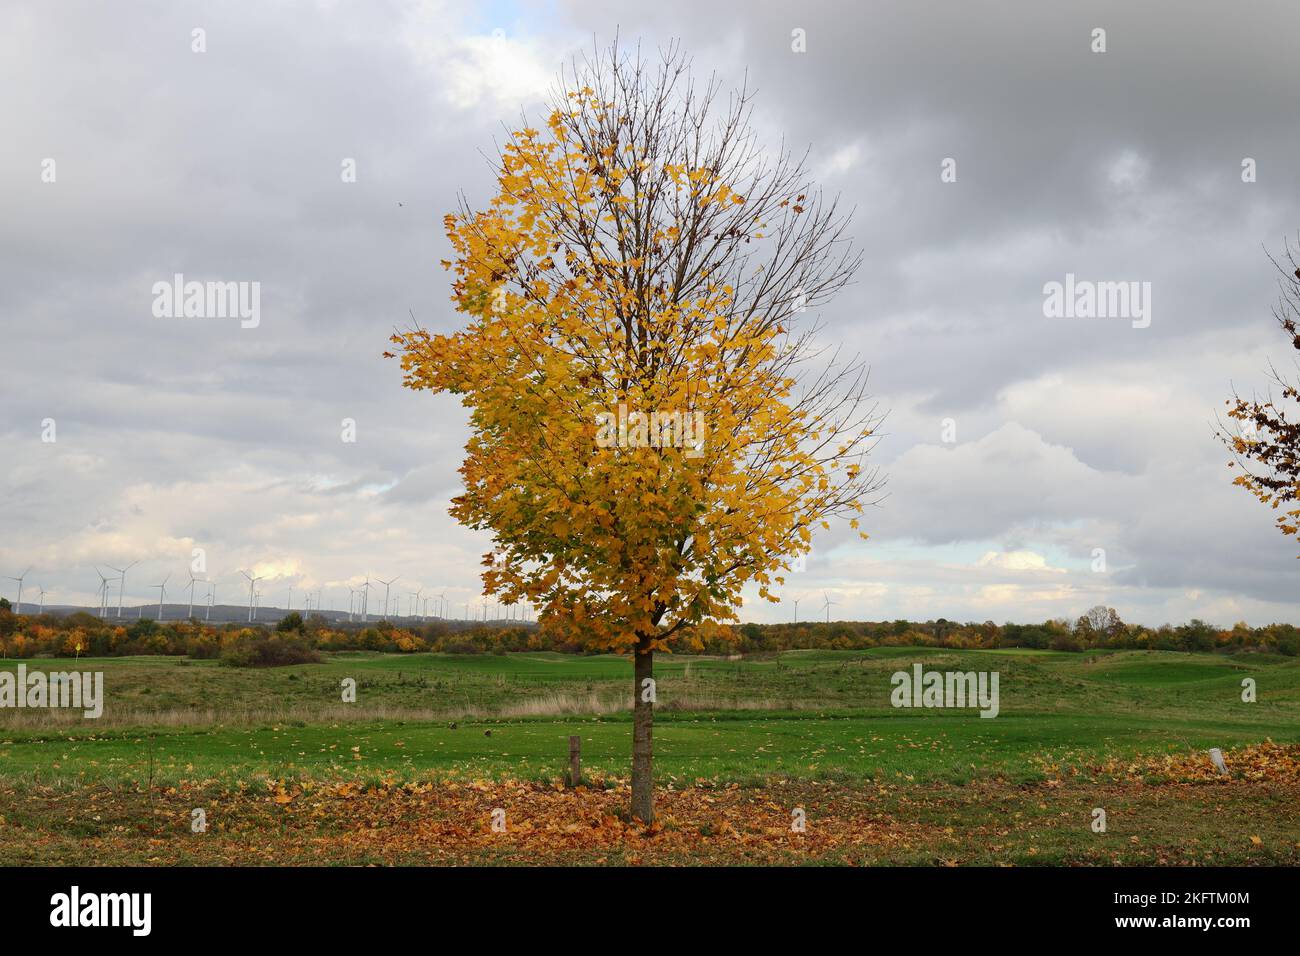 Vue en grand angle d'un petit arbre avec des feuilles automnales devant une pelouse verte Banque D'Images